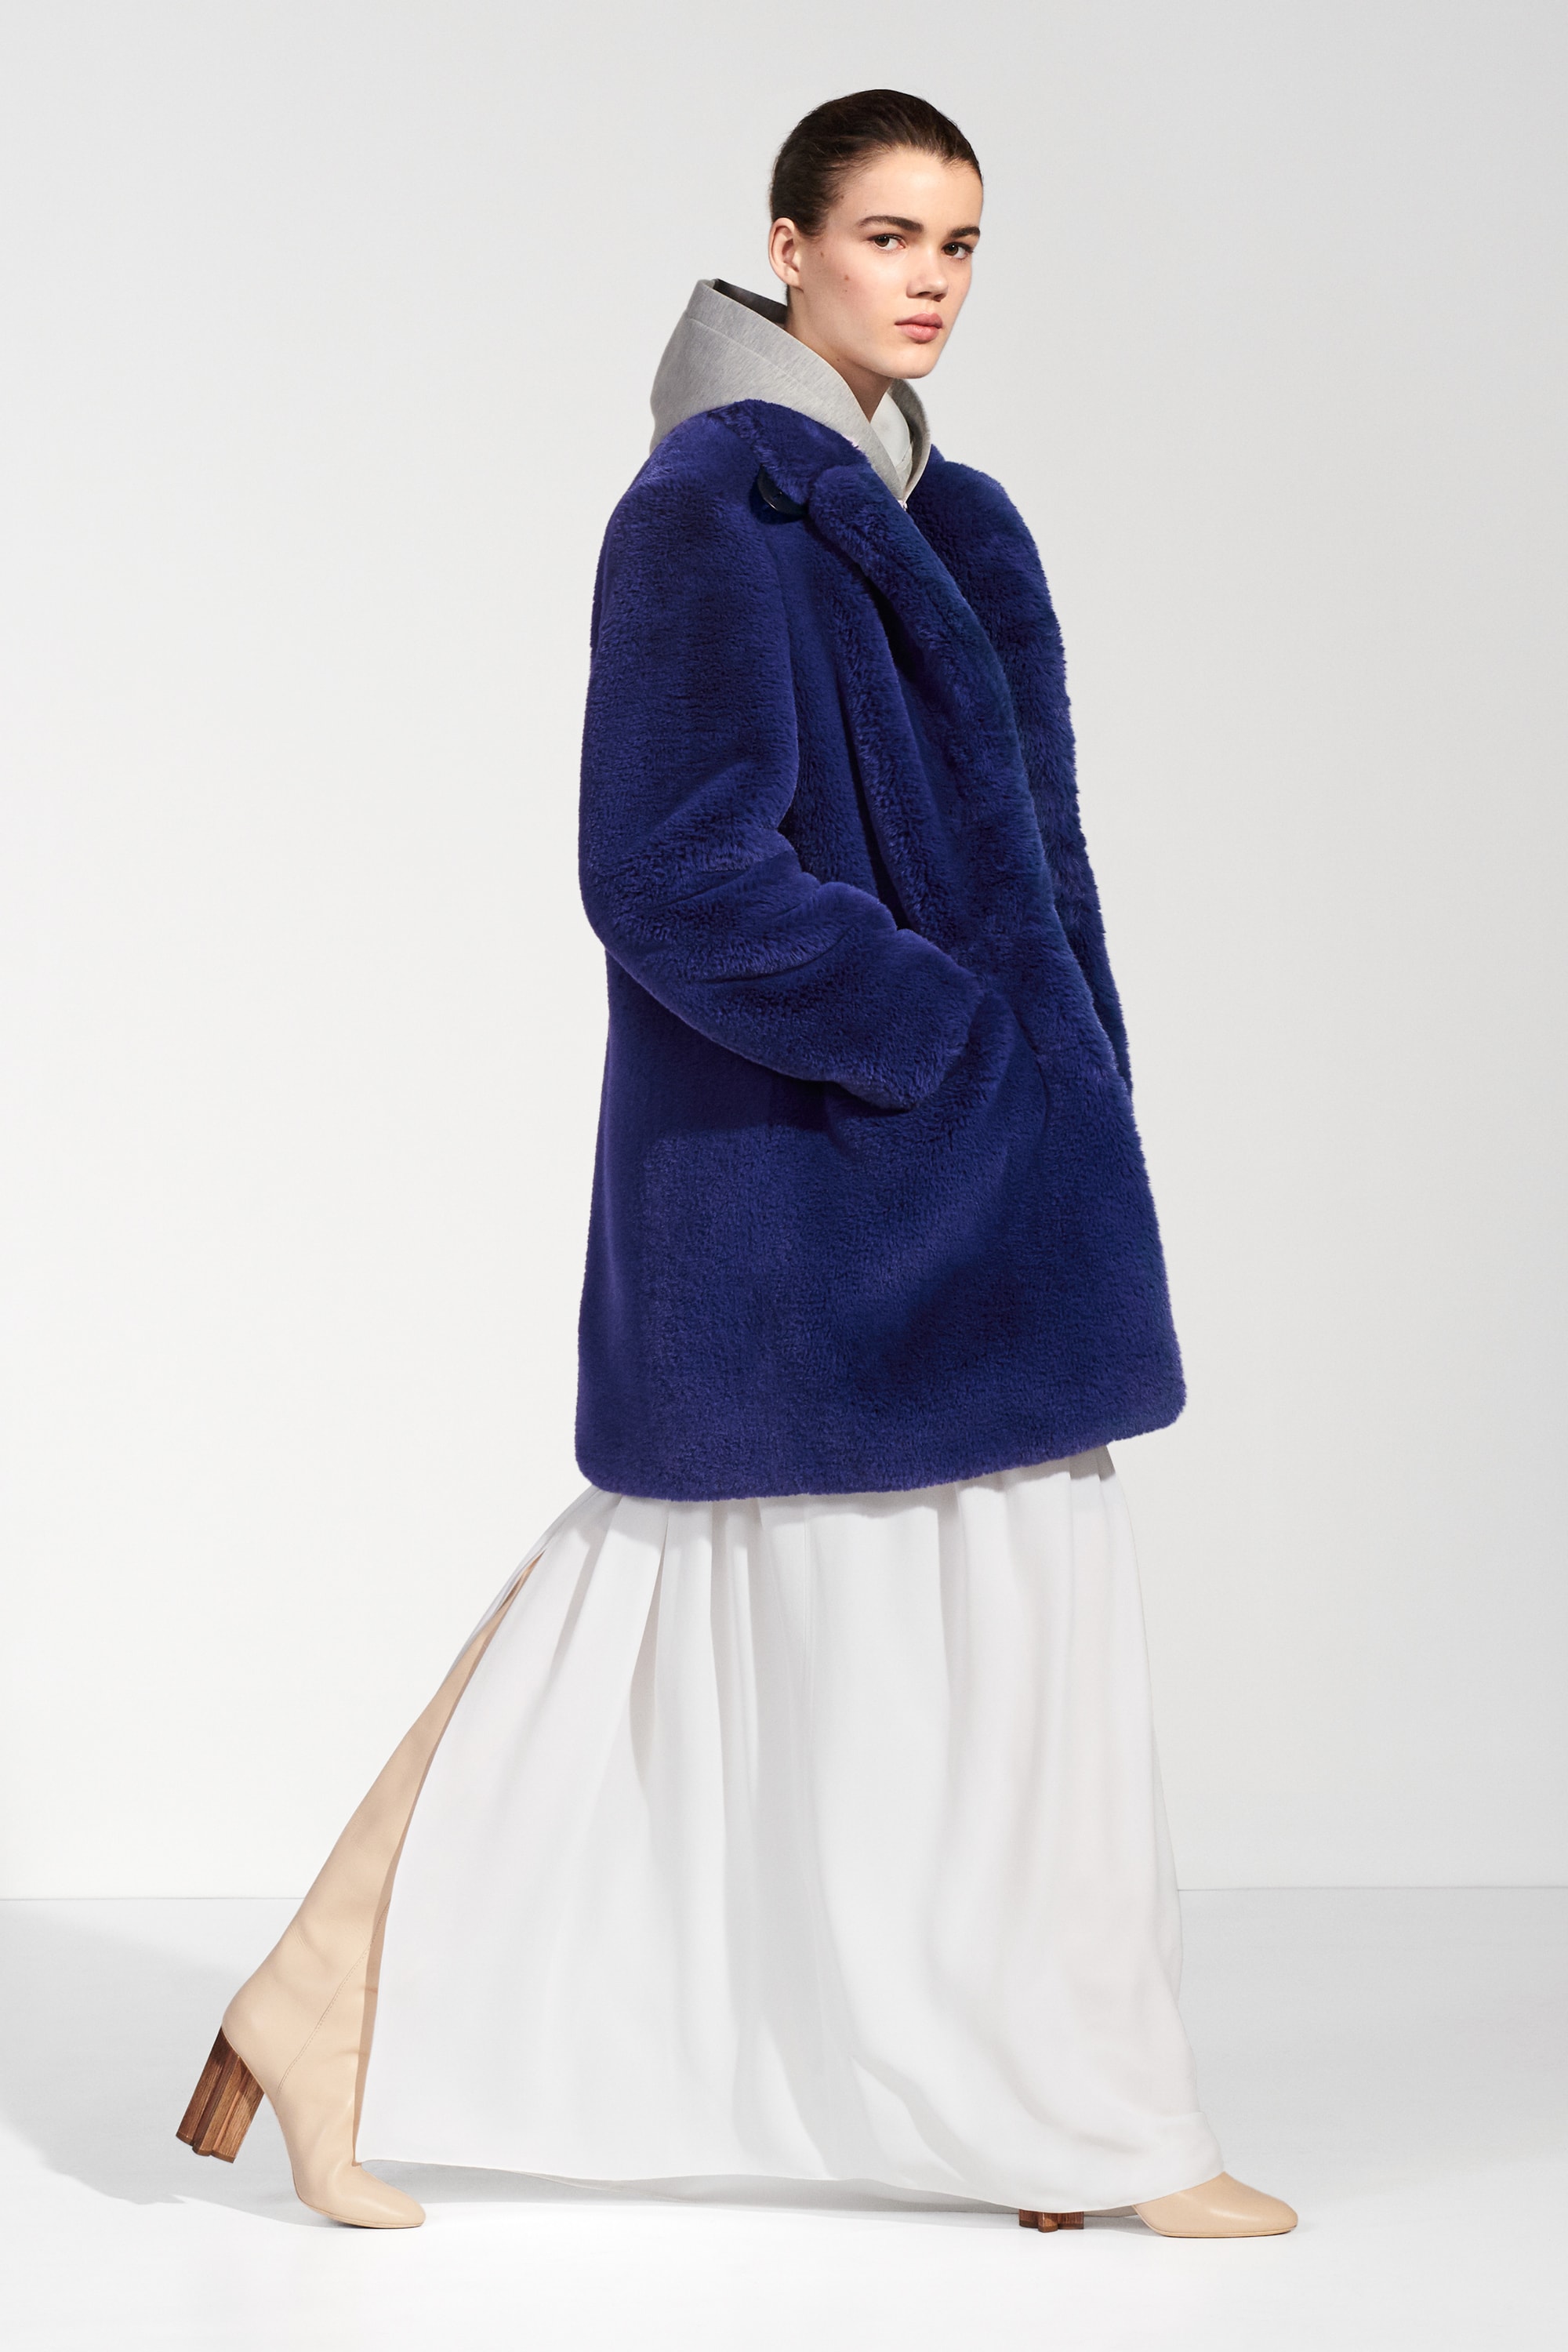 Louis Vuitton Pre-Fall 2018 Lookbook Collection Nicolas Ghesquiere Coats Outerwear